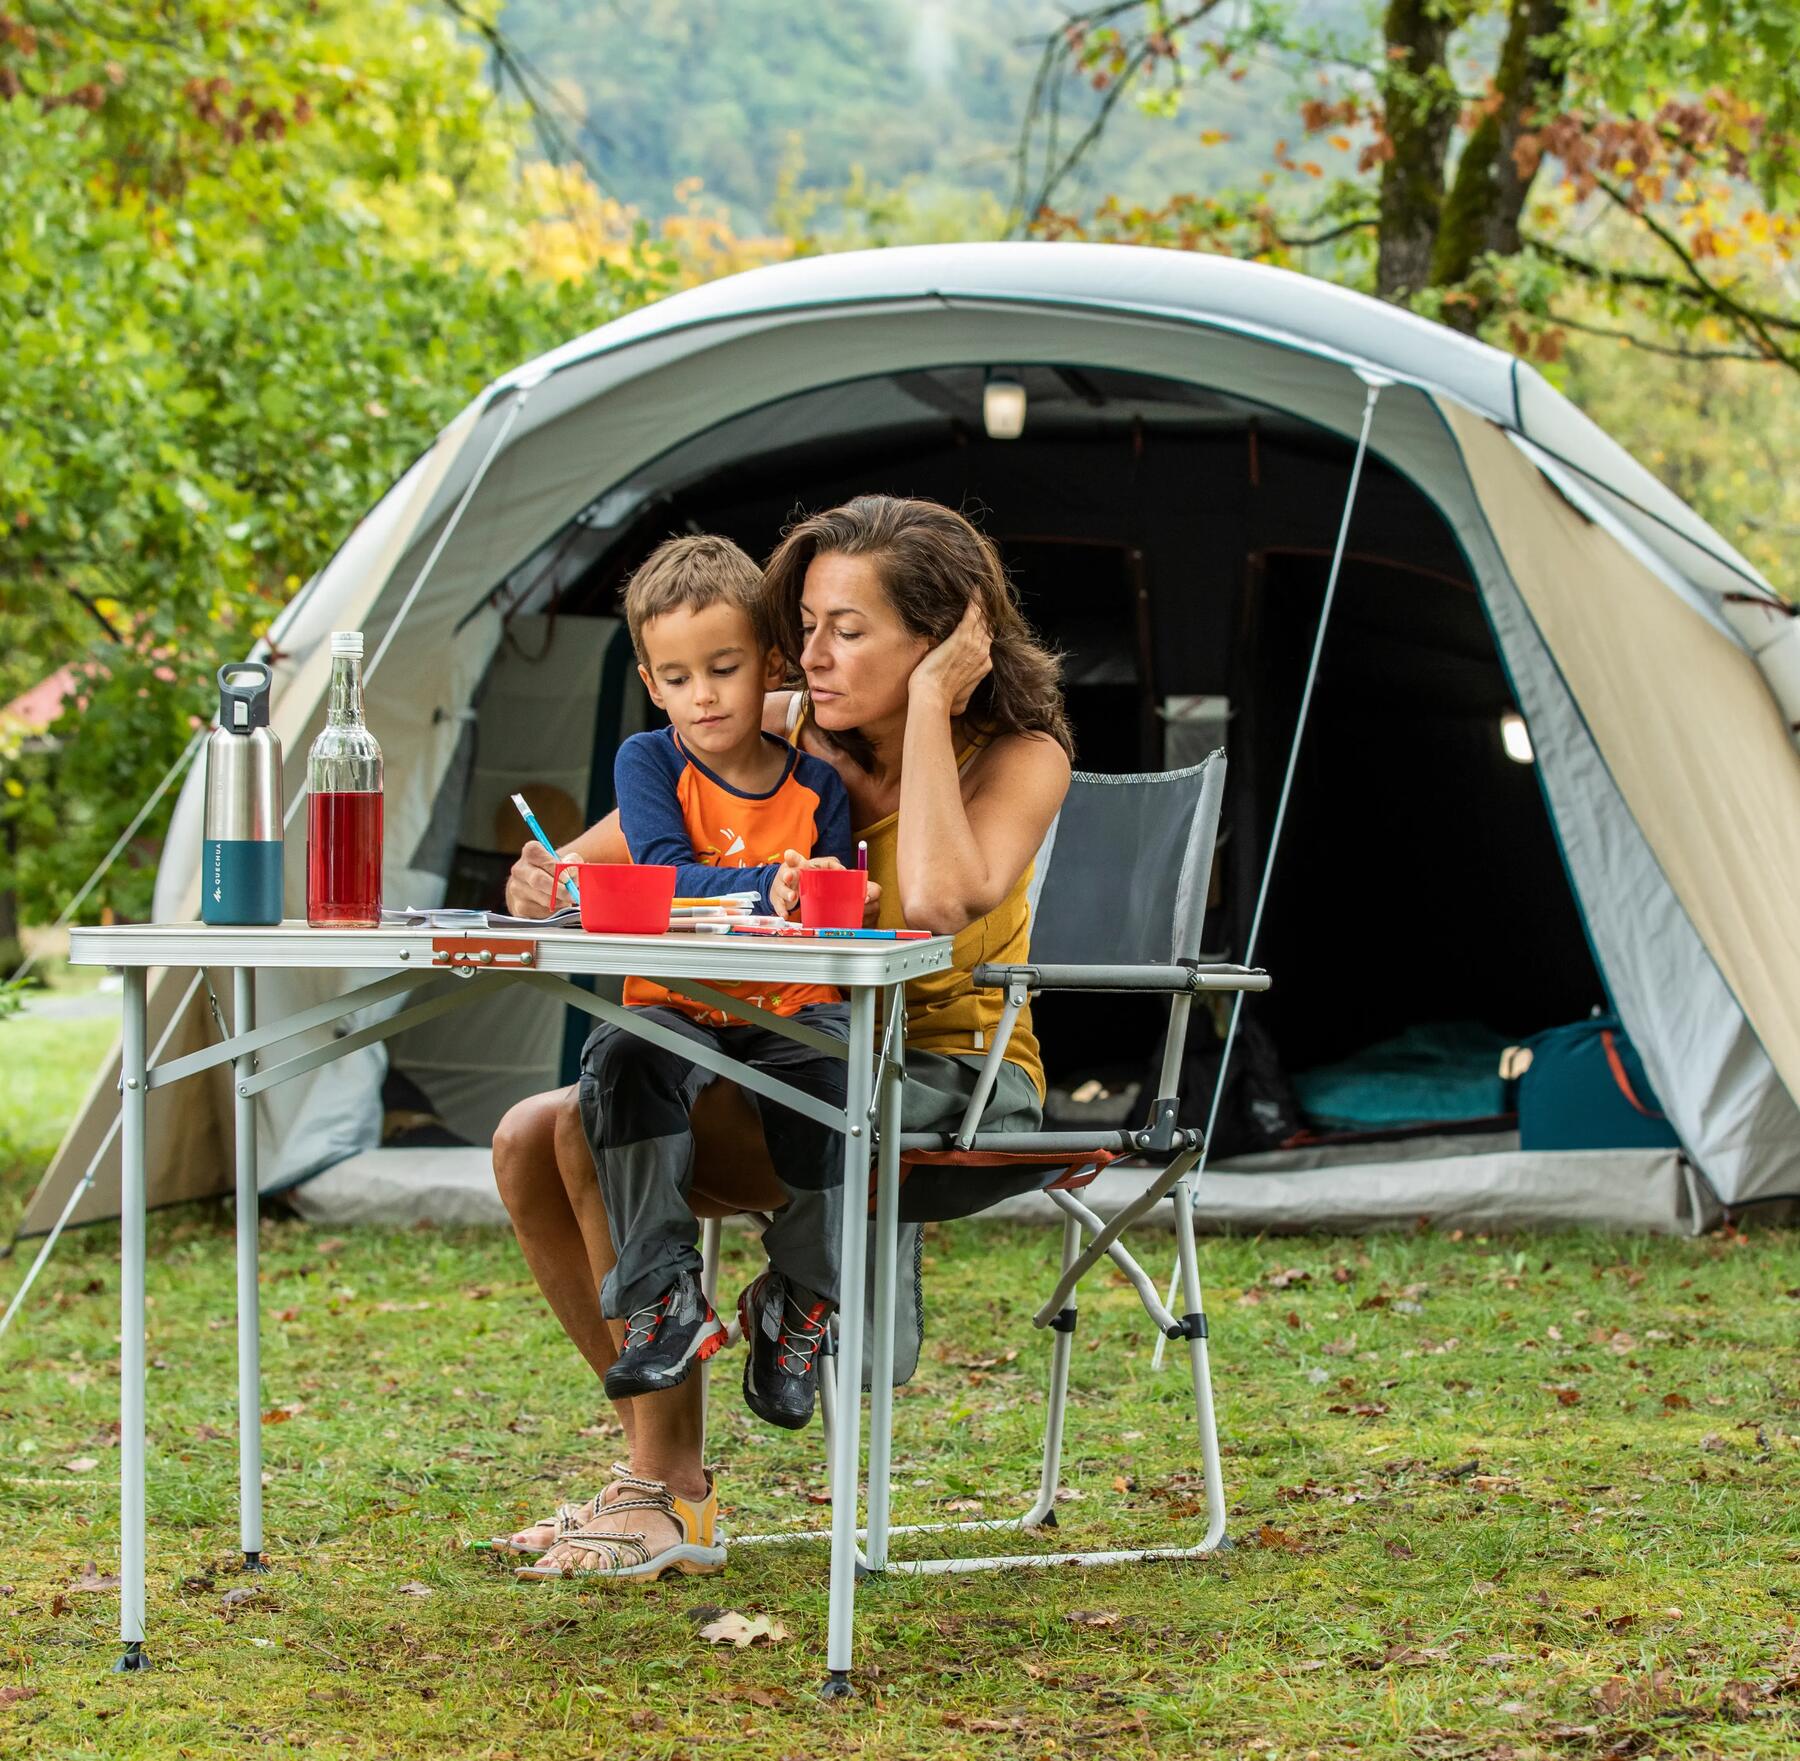 Comment choisir une tente familiale pour aller camper ?